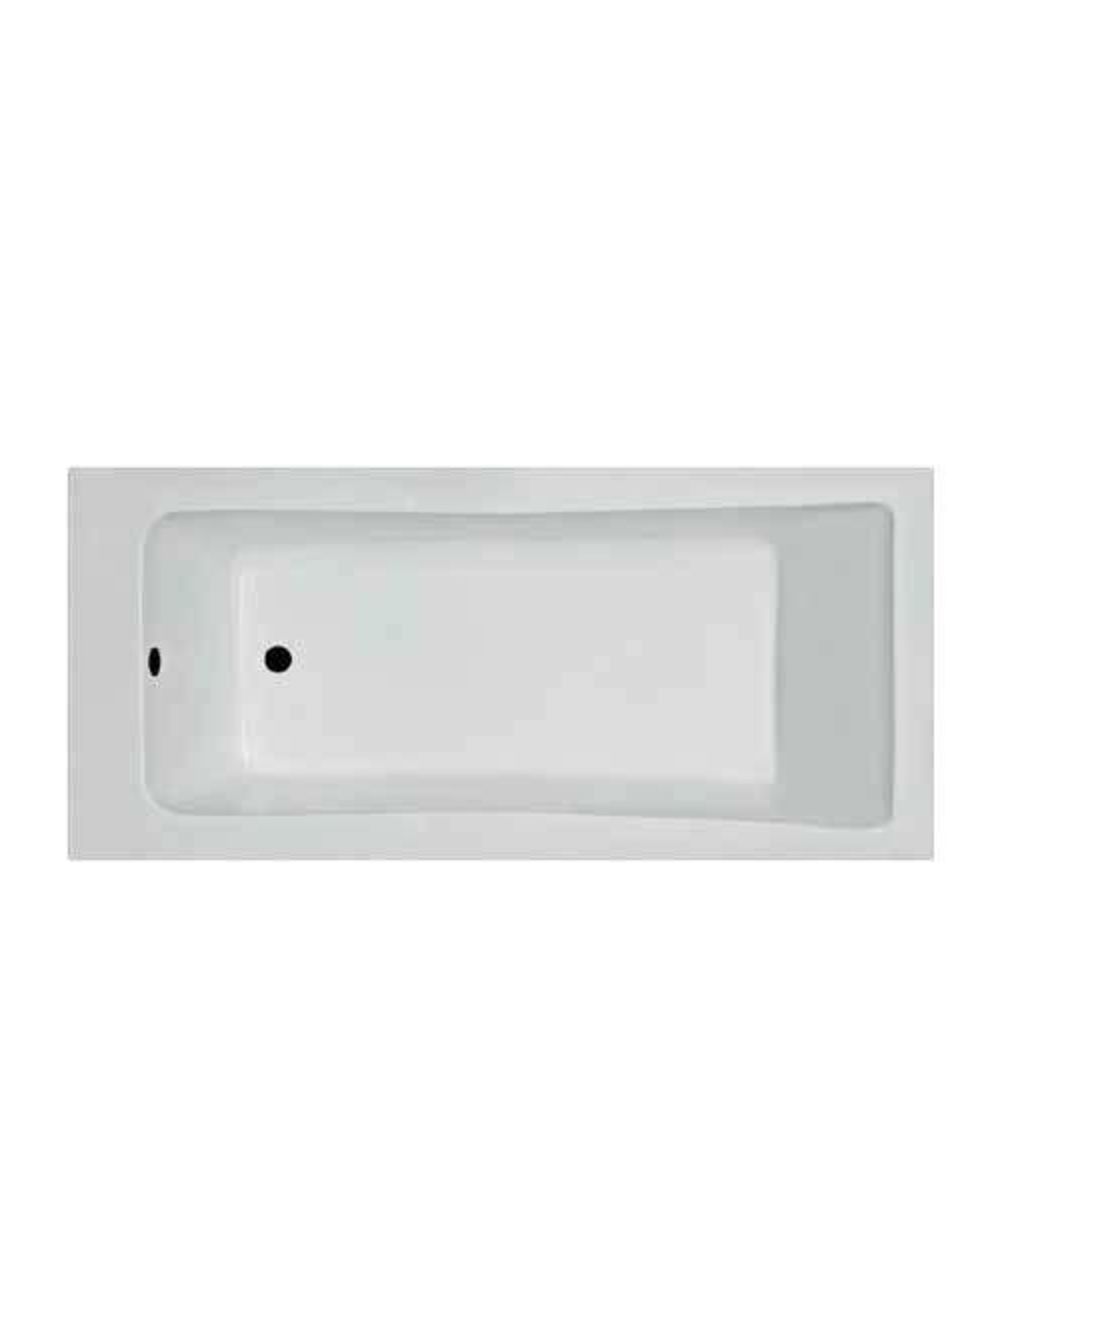 ע- אמבטיה אקרילית לבנה 120 * 70 דגם אוריון פרופילון PR468020